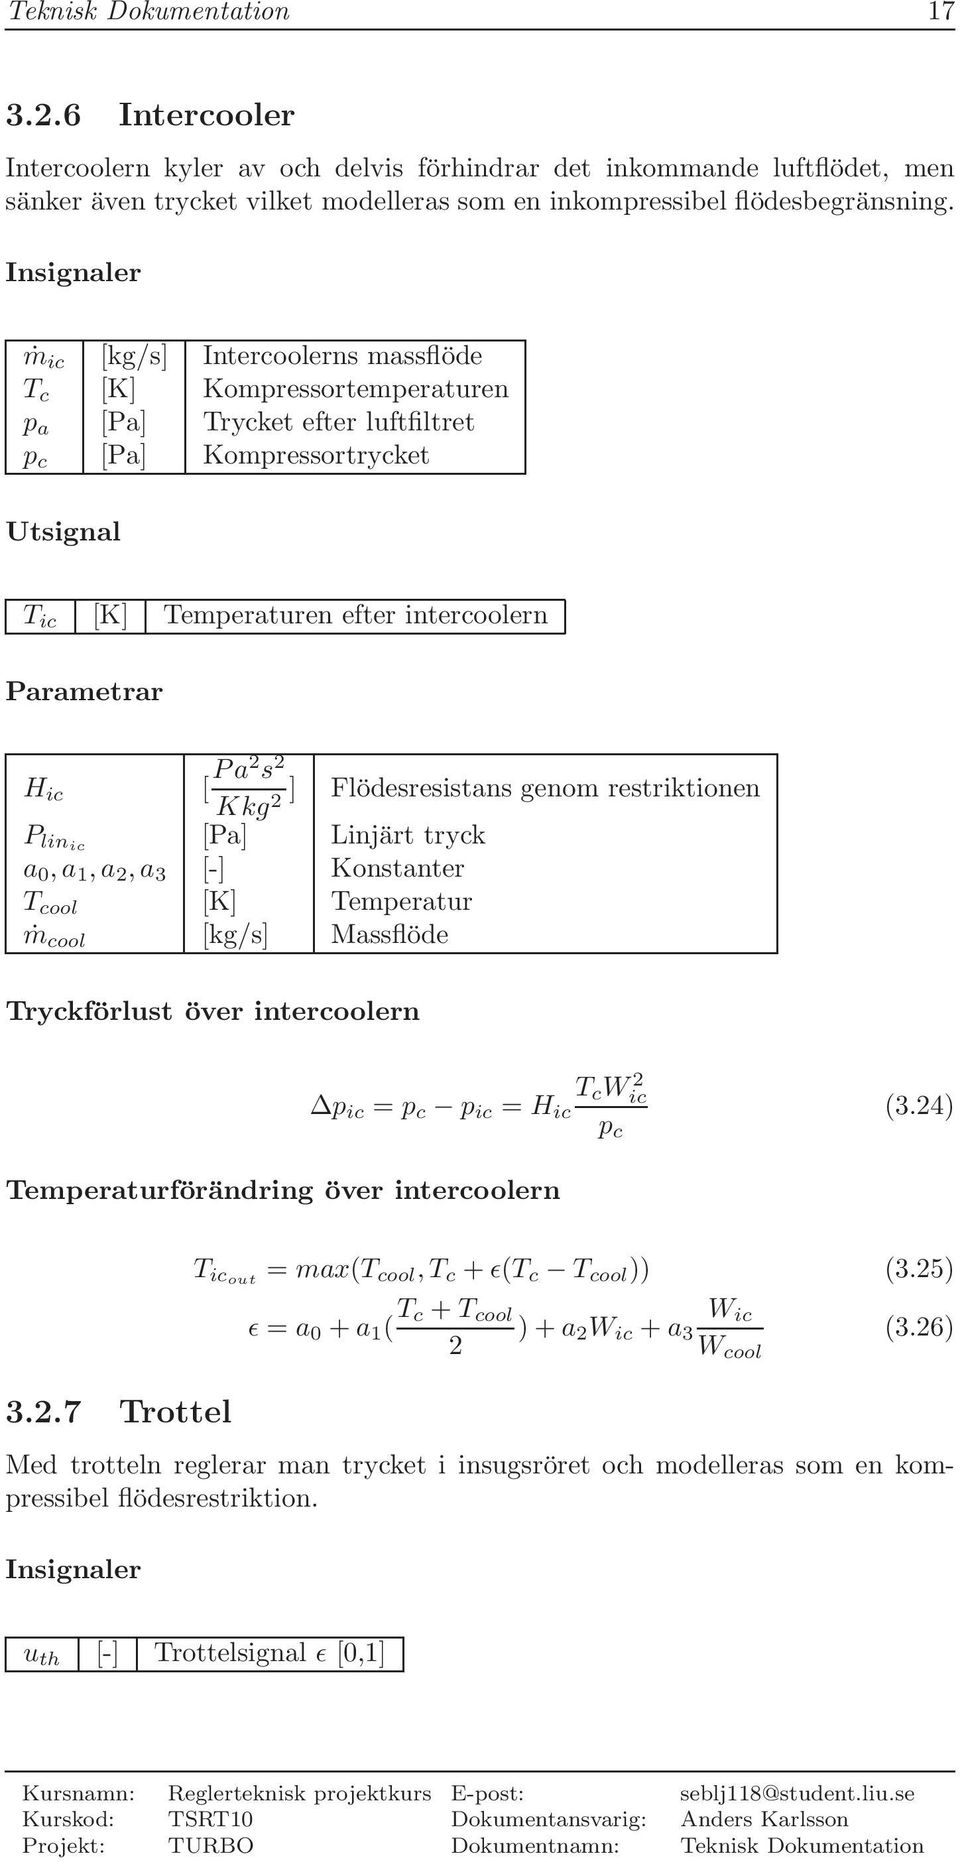 Parametrar H ic [ Pa s ] Flödesresistans genom restriktionen Kkg P linic [Pa] Linjärt tryck a,a,a,a 3 [-] Konstanter T cool [K] Temperatur ṁ cool [kg/s] Massflöde Tryckförlust över intercoolern